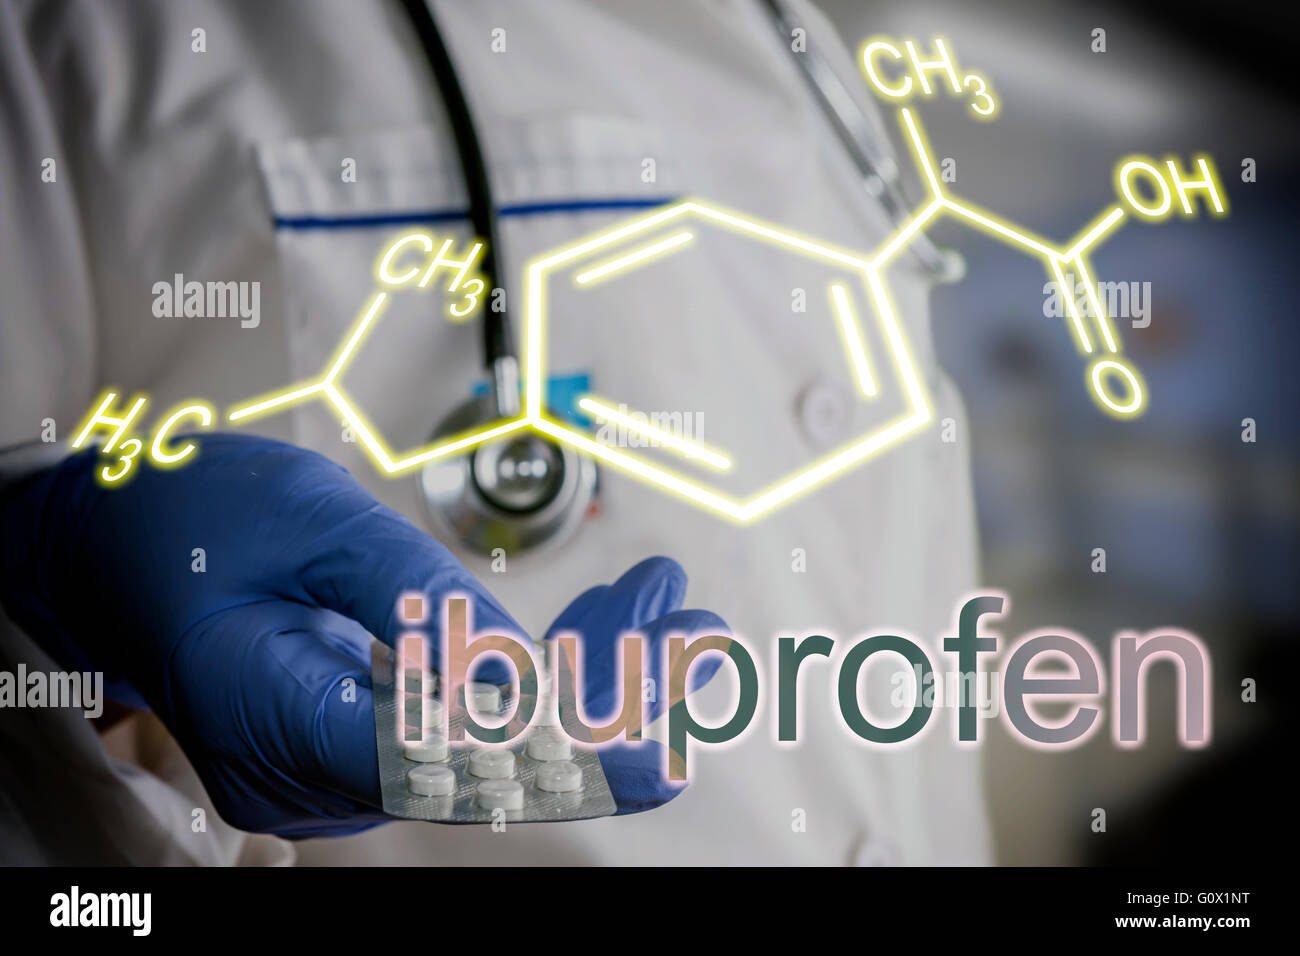 Medico tenendo blister pillole, la formula chimica di ibuprofen Foto Stock